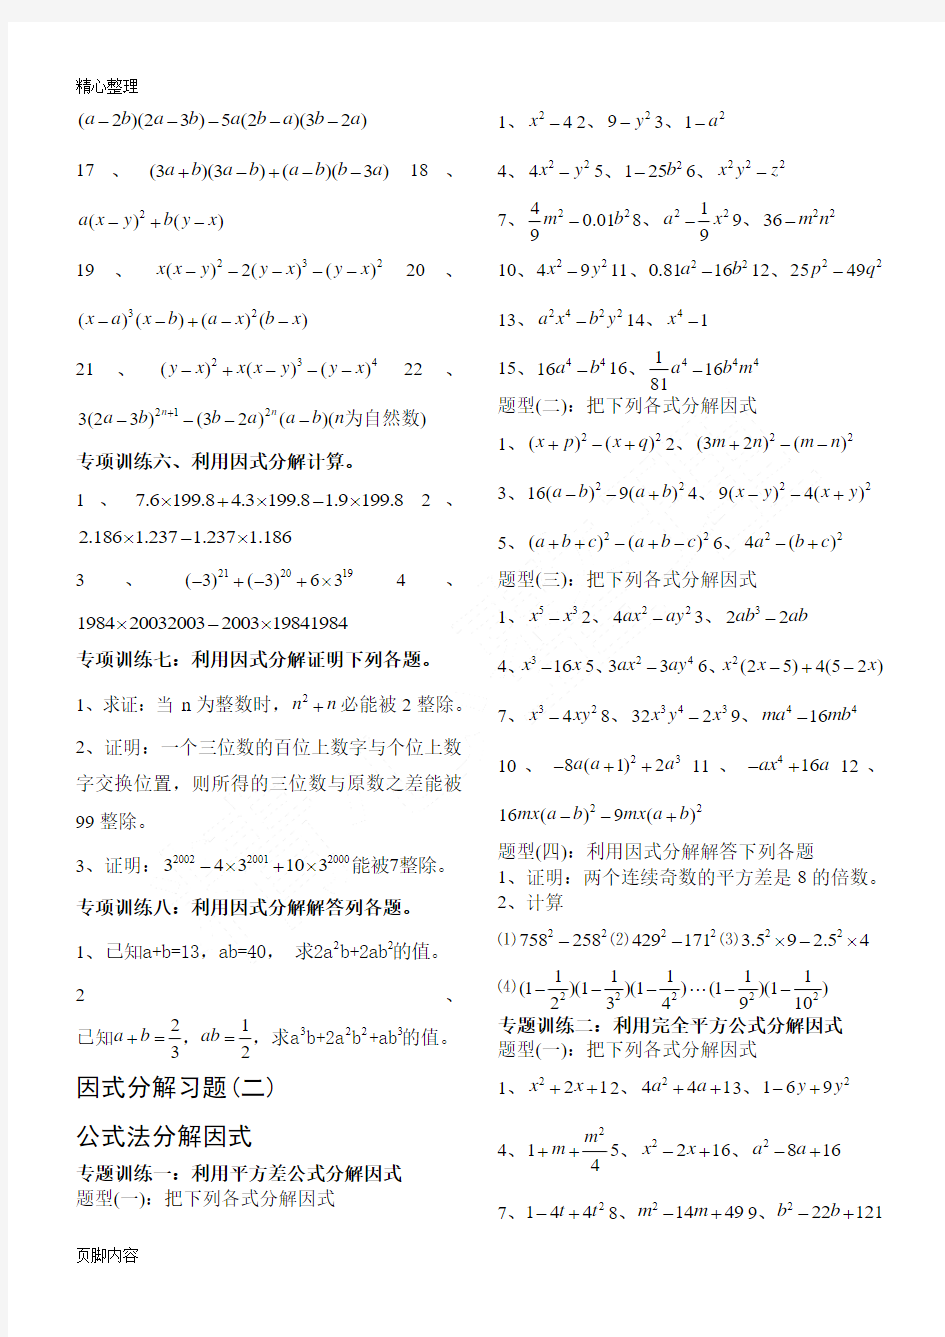 八年级上册因式分解分类测习题(经典全面)